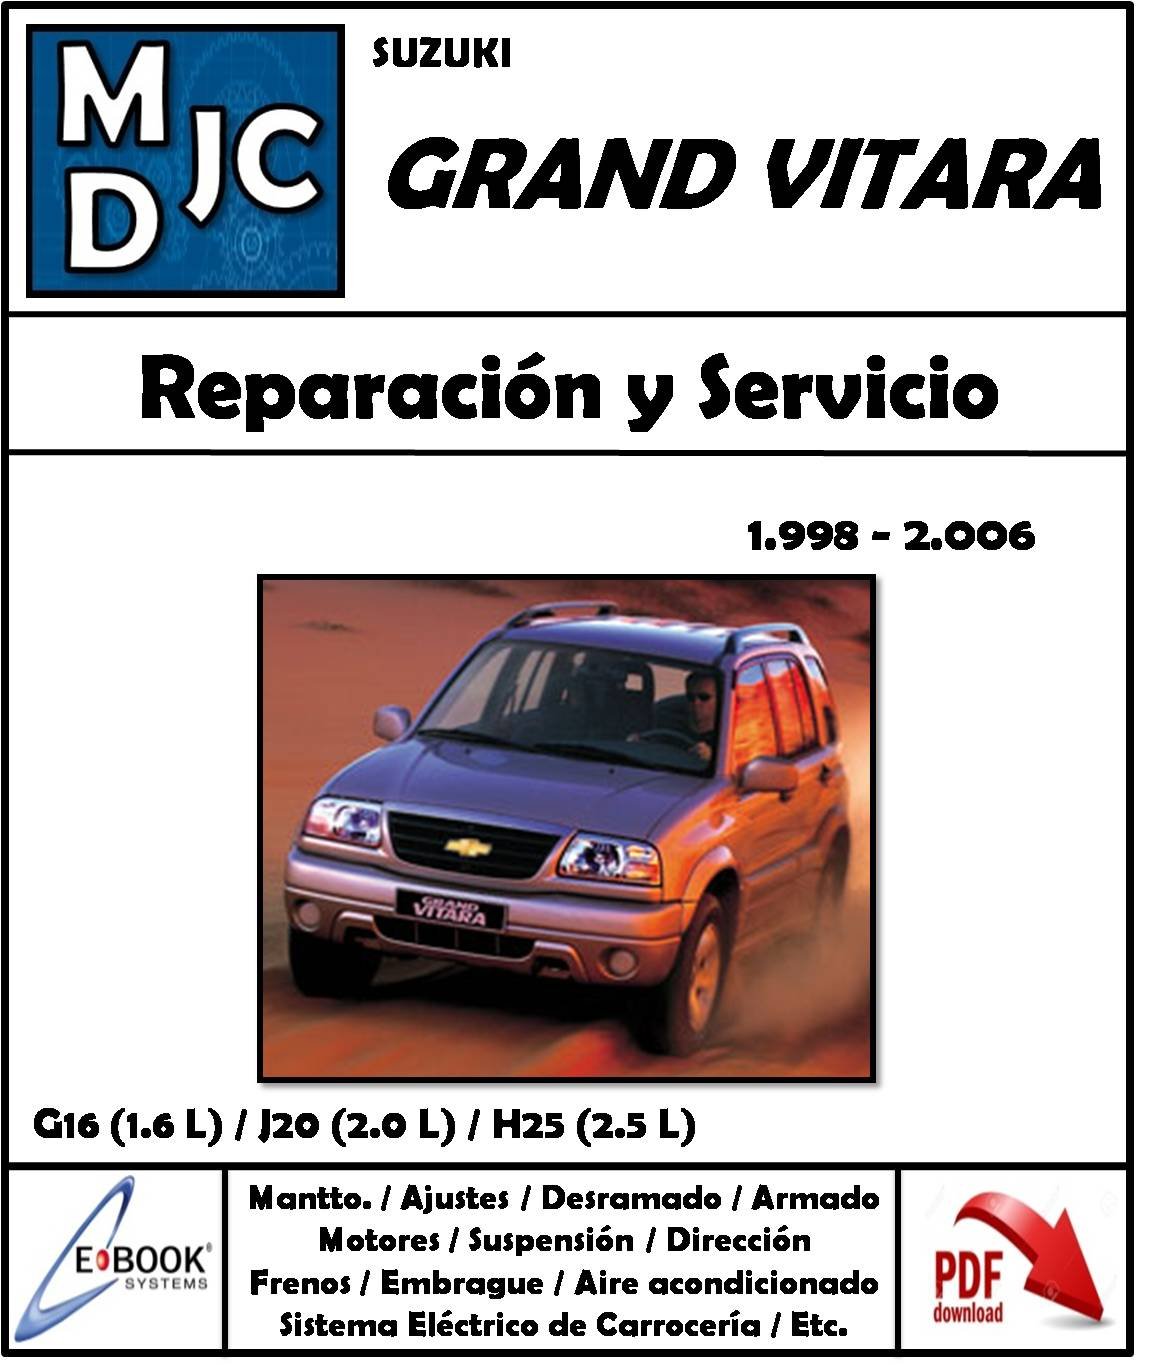 Chevrolet Suzuki Grand Vitara 1998-2006